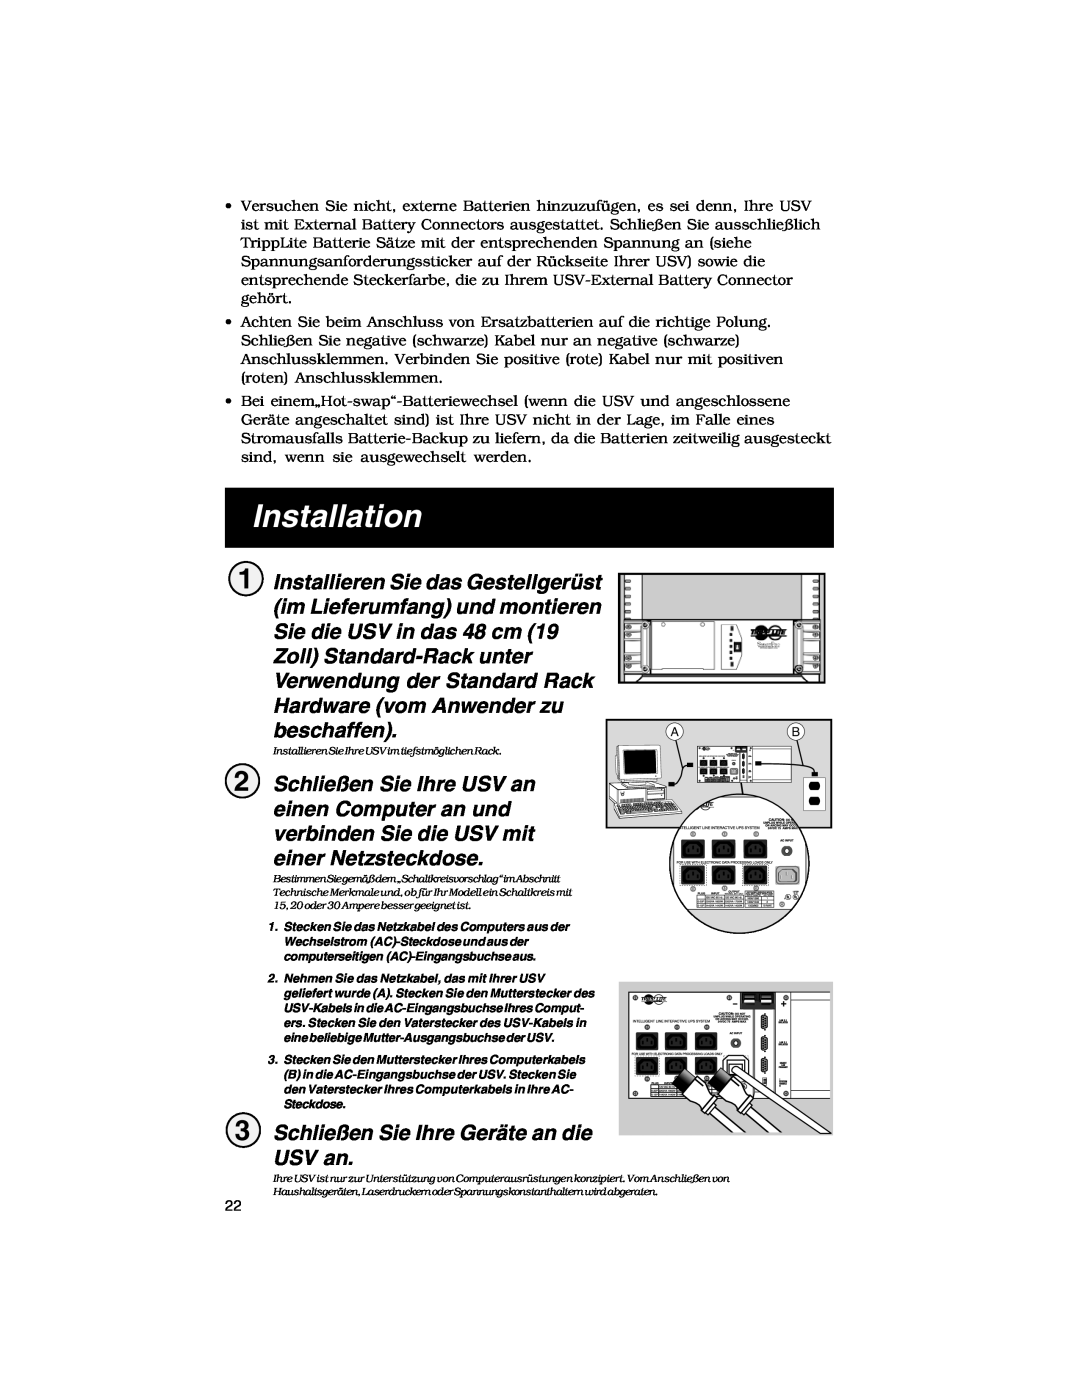 Tripp Lite Rackmount Intelligent Network UPS Systems owner manual Schließen Sie Ihre Geräte an die USV an, Installation 